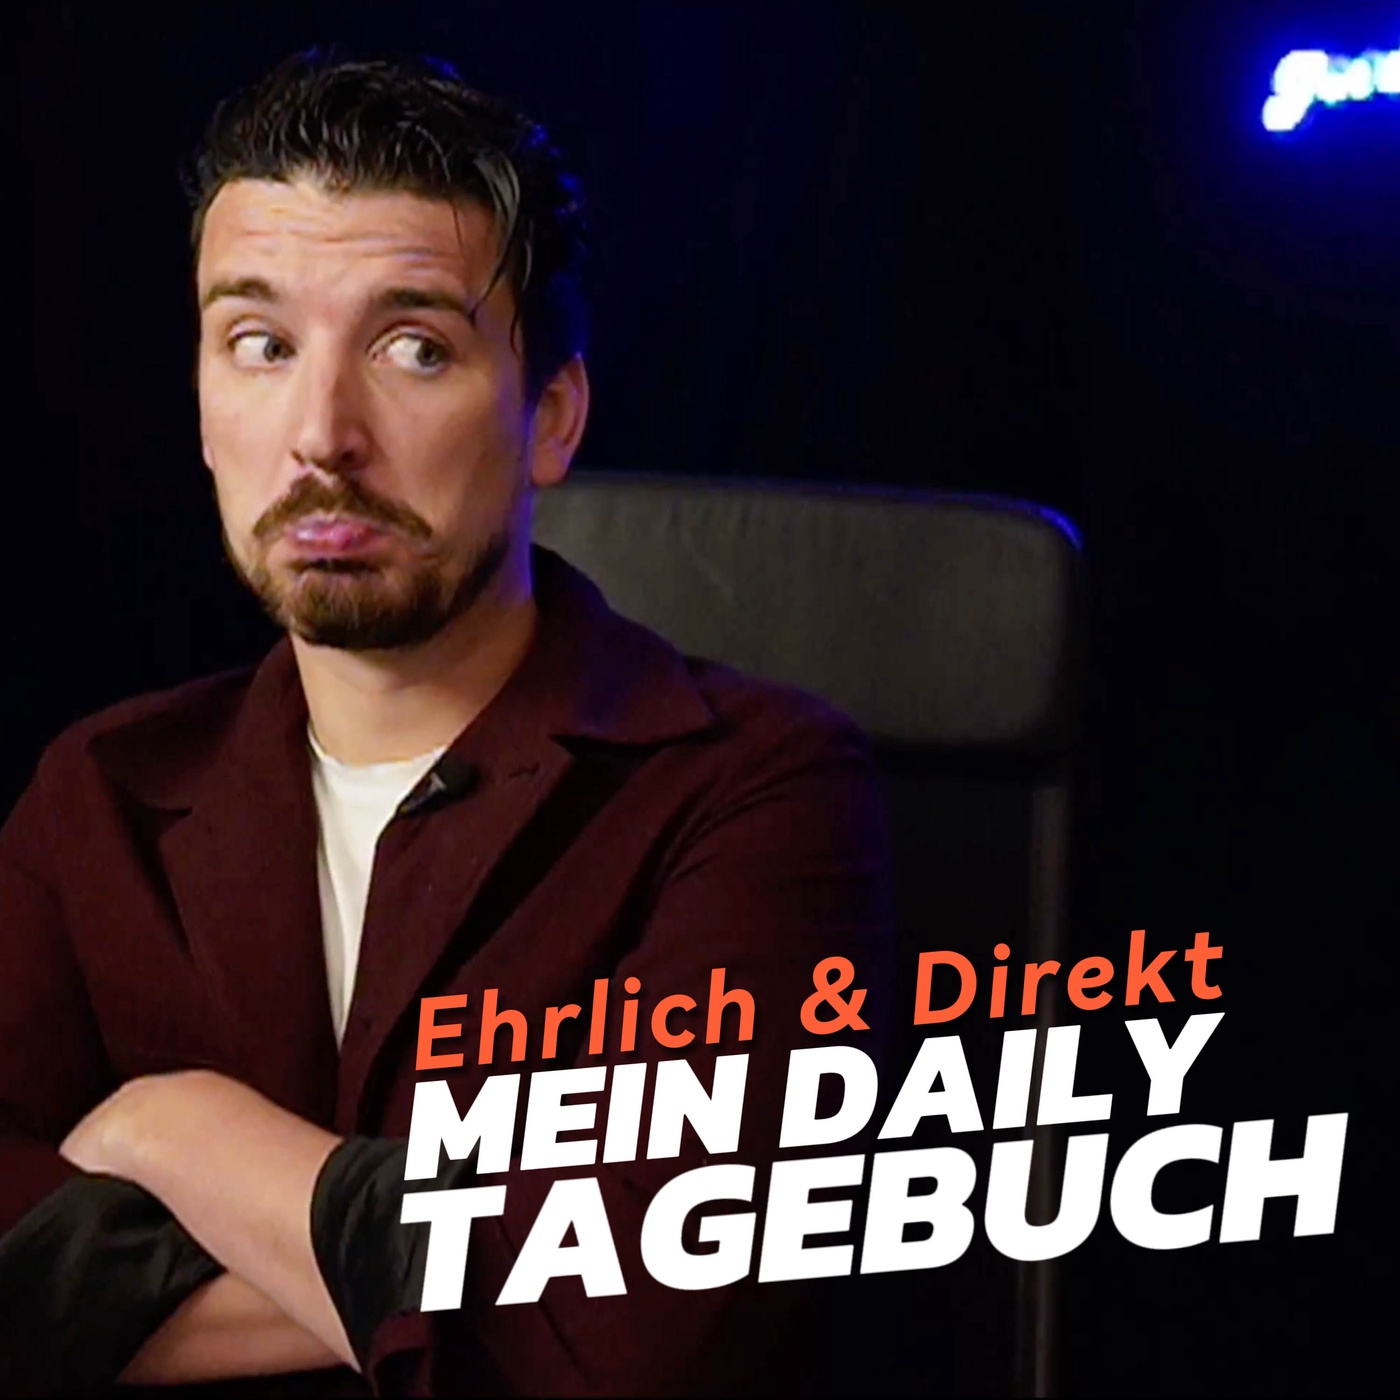 Ehrlich & Direkt - Mein Daily Tagebuch